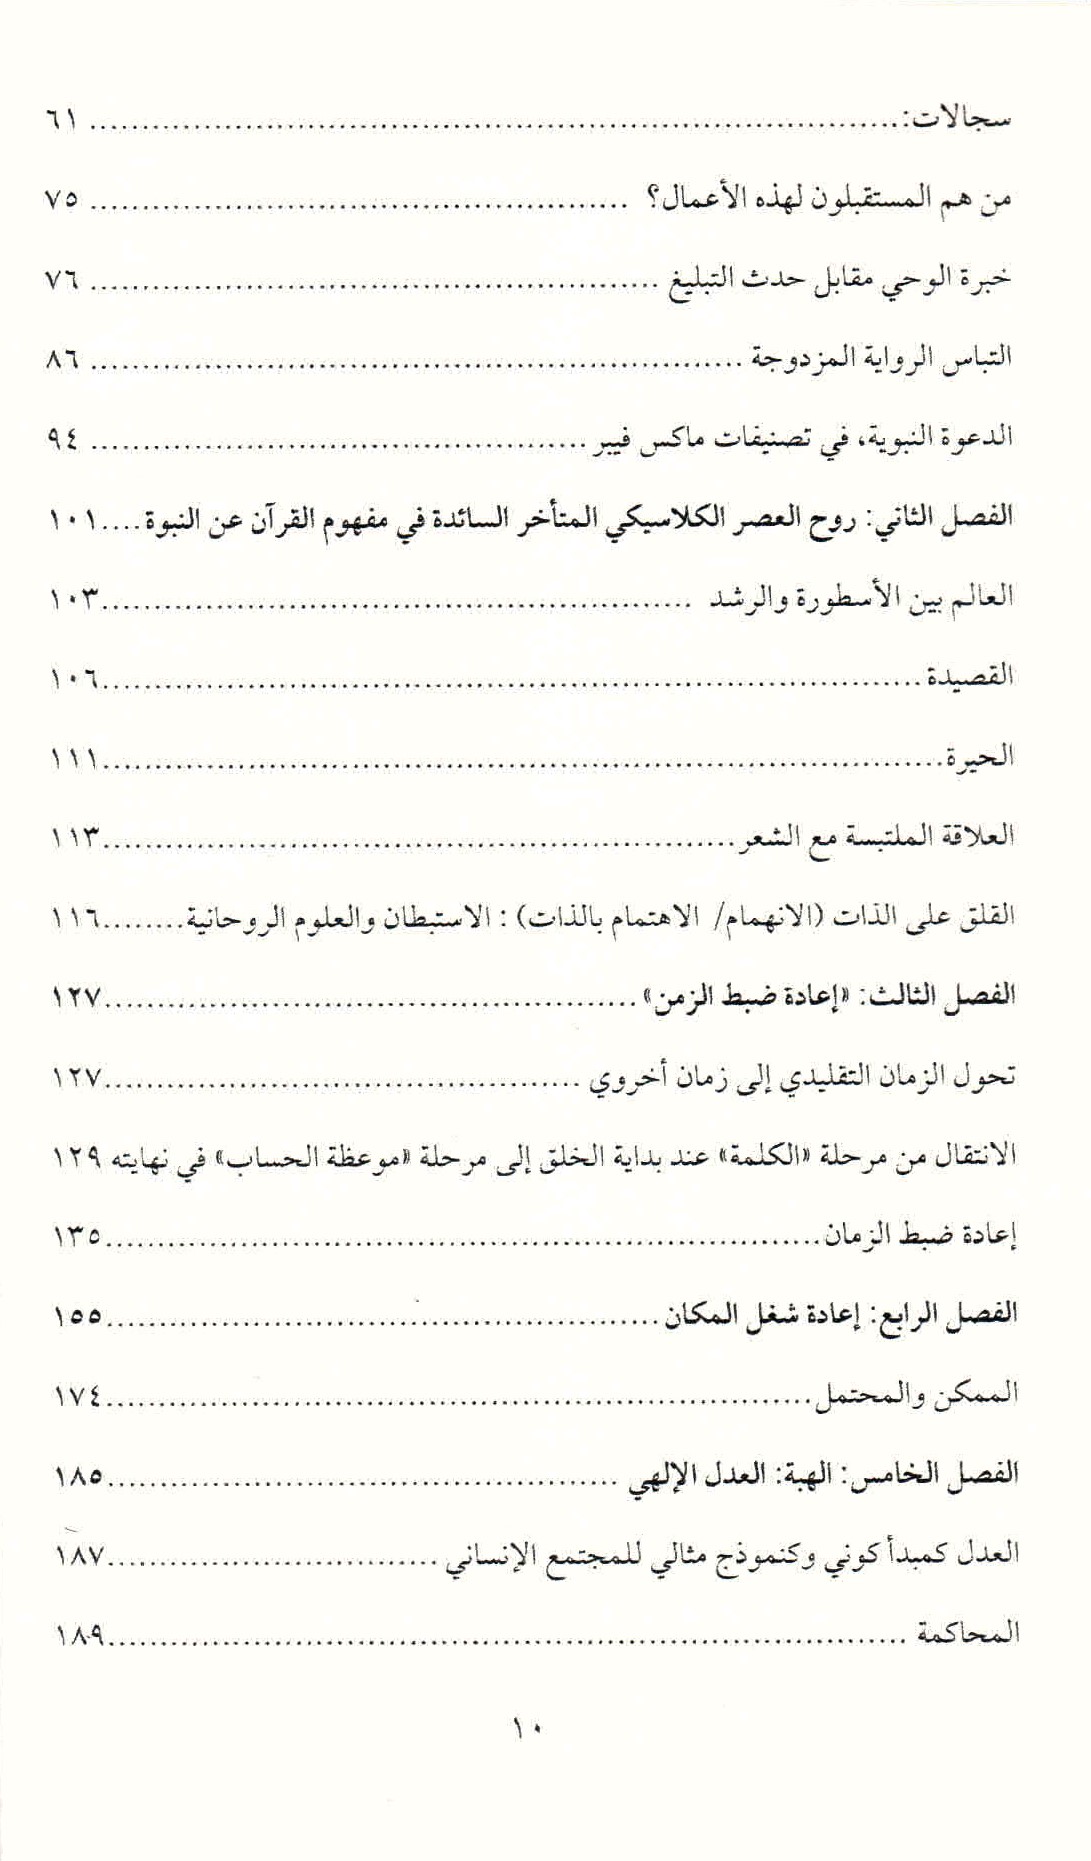 ص. 10 قائمة محتويات كتاب "كيف سحر القرآن العالم لأنجيليكا نويفيرت"